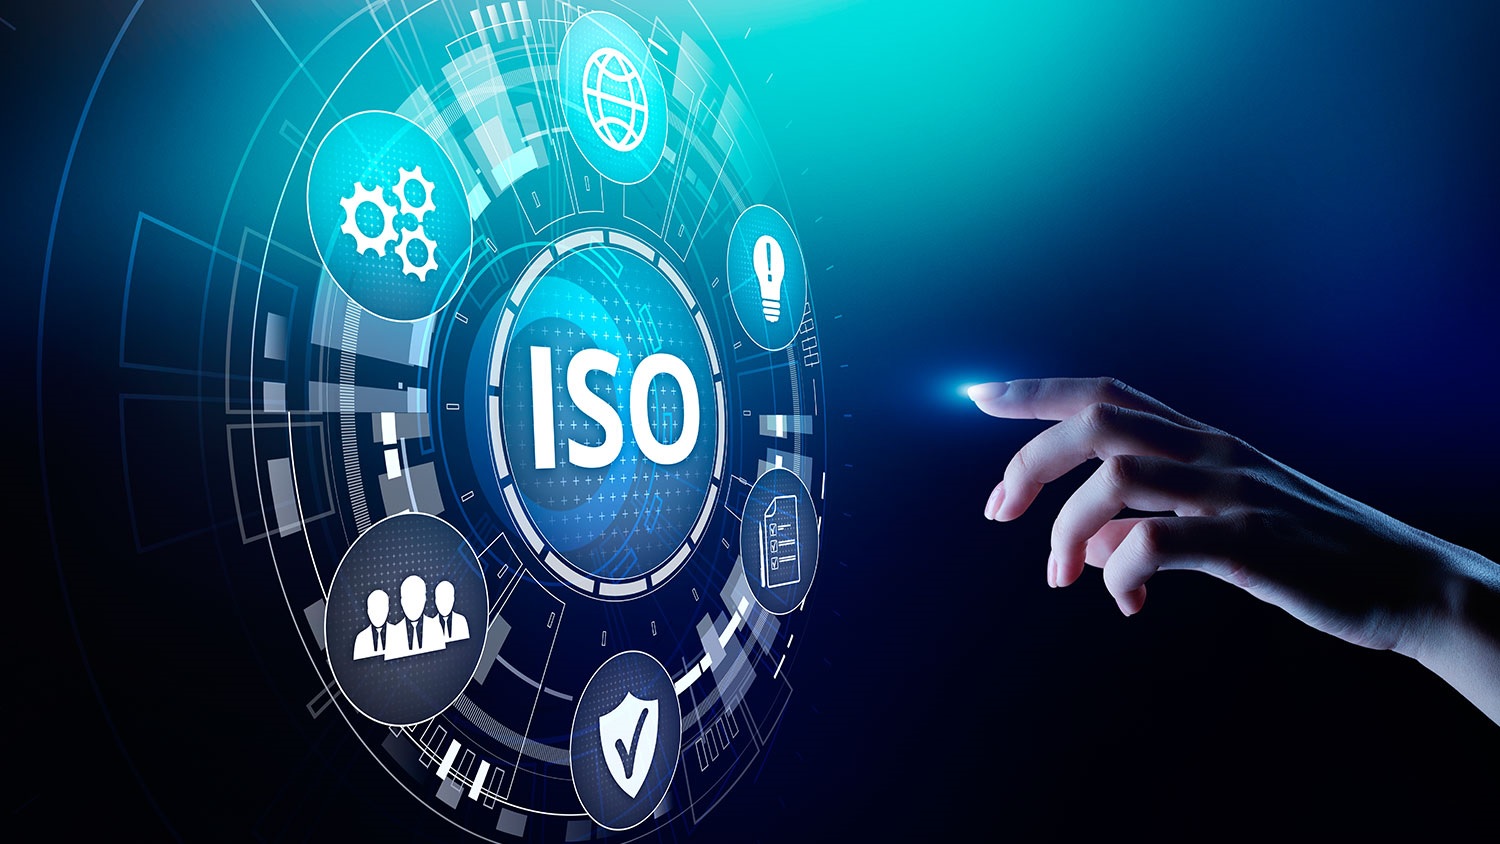 ISO - An Toàn Thông Tin 